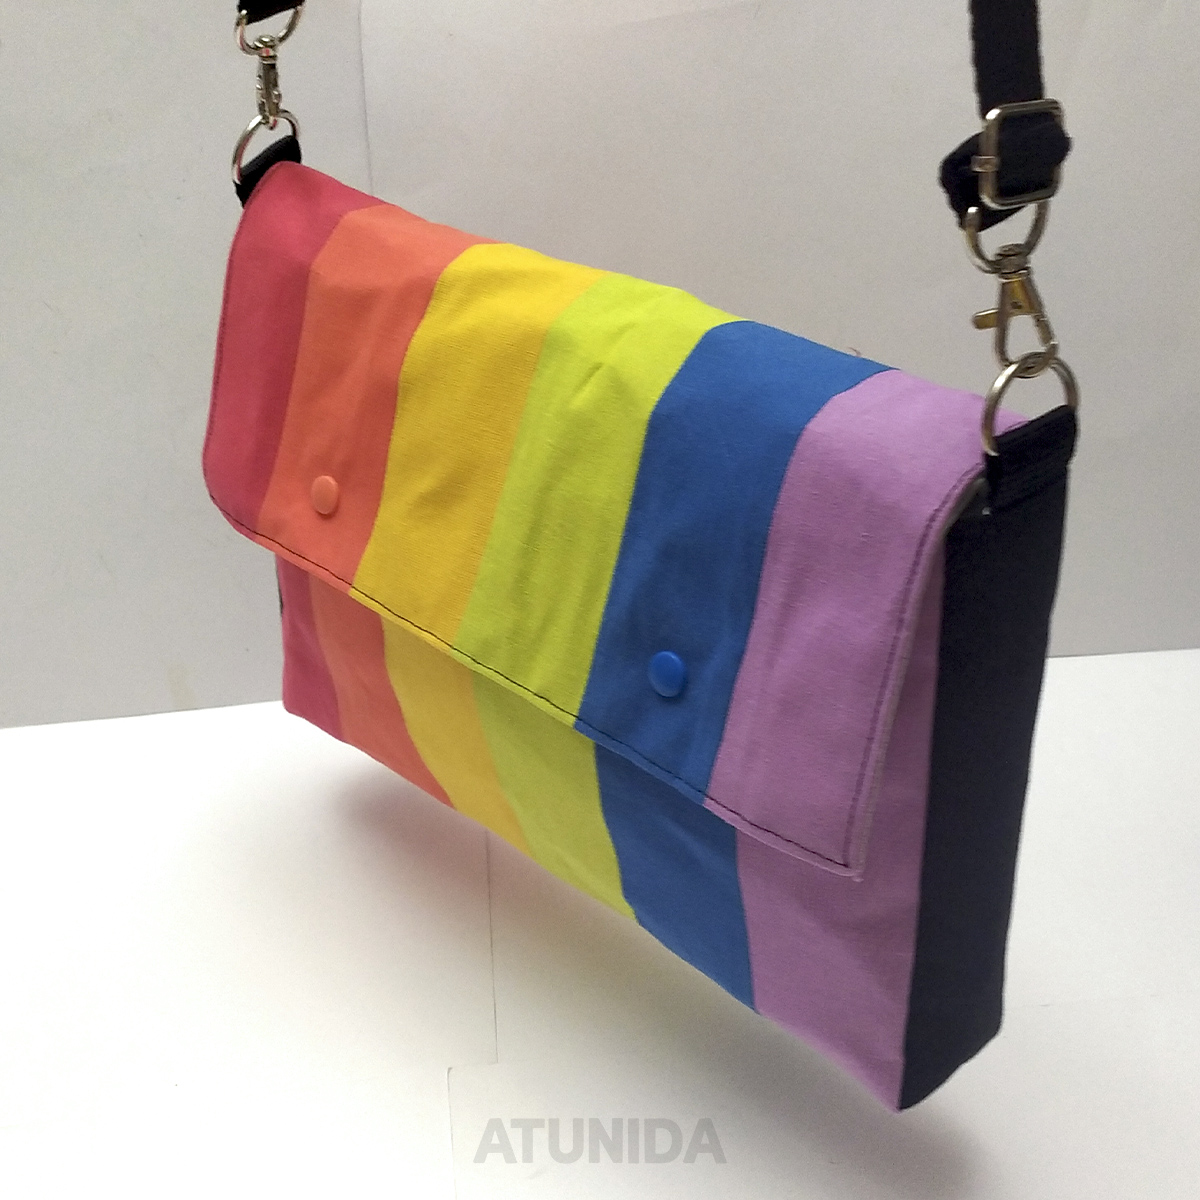 Bolso Pride - Orgullo - Atunida